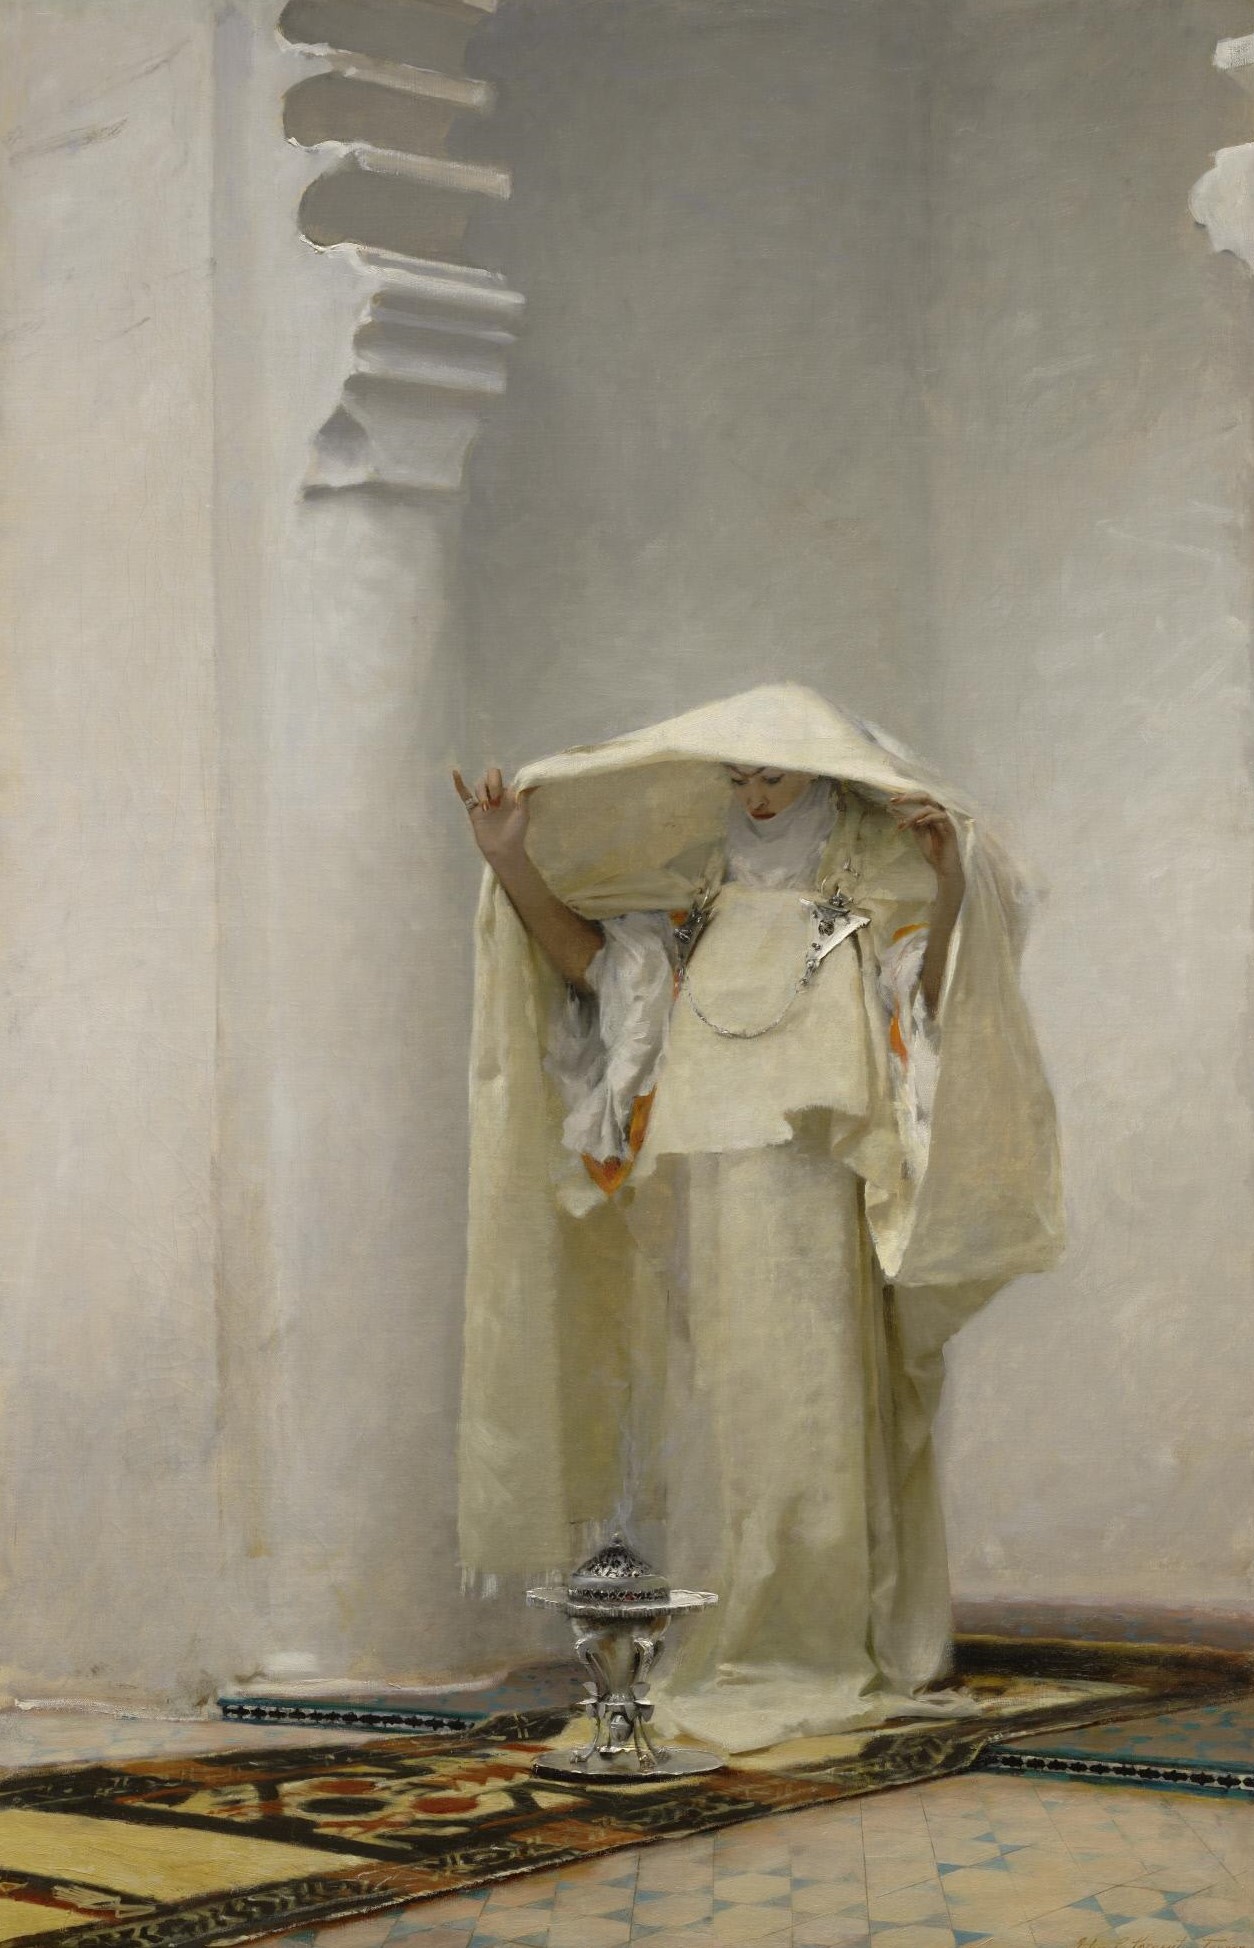 앰버그리스의 연기(용연향의 연기) by John Singer Sargent - 1880 - 139.1 x 90.6 cm 